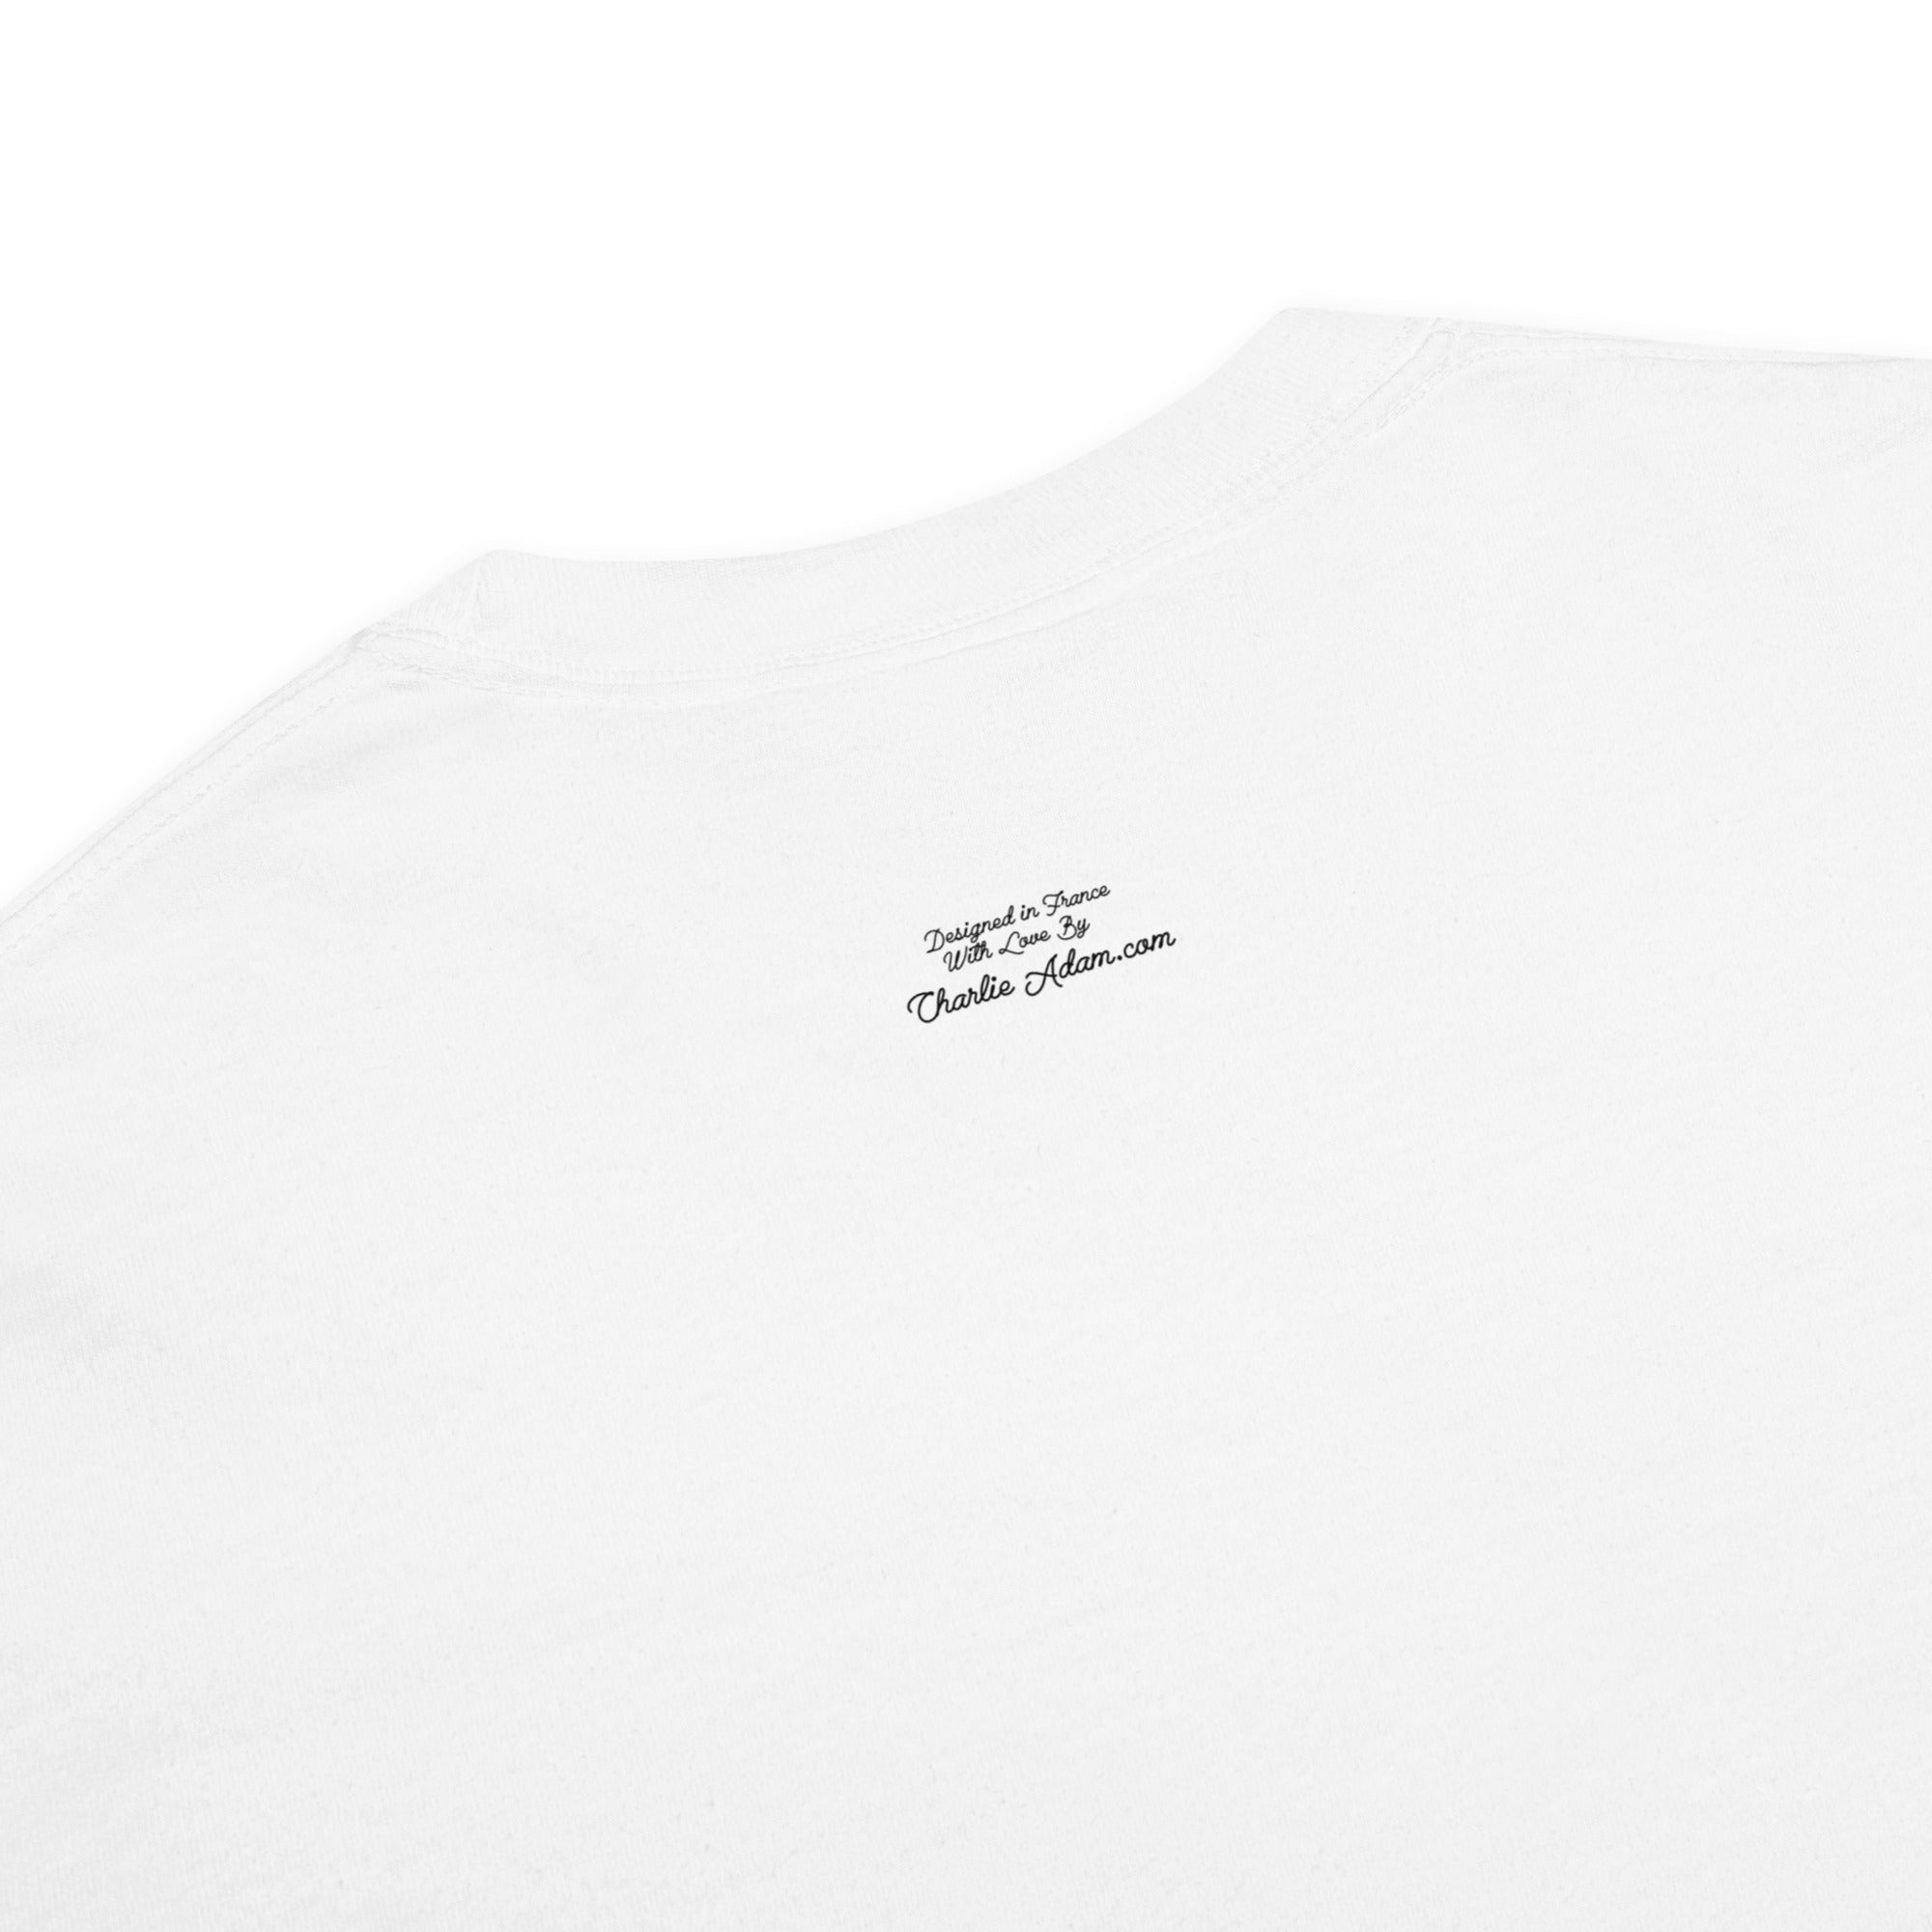 T-shirt teinté lourd unisexe License To Chill Mission Après-Ski sur couleurs claires